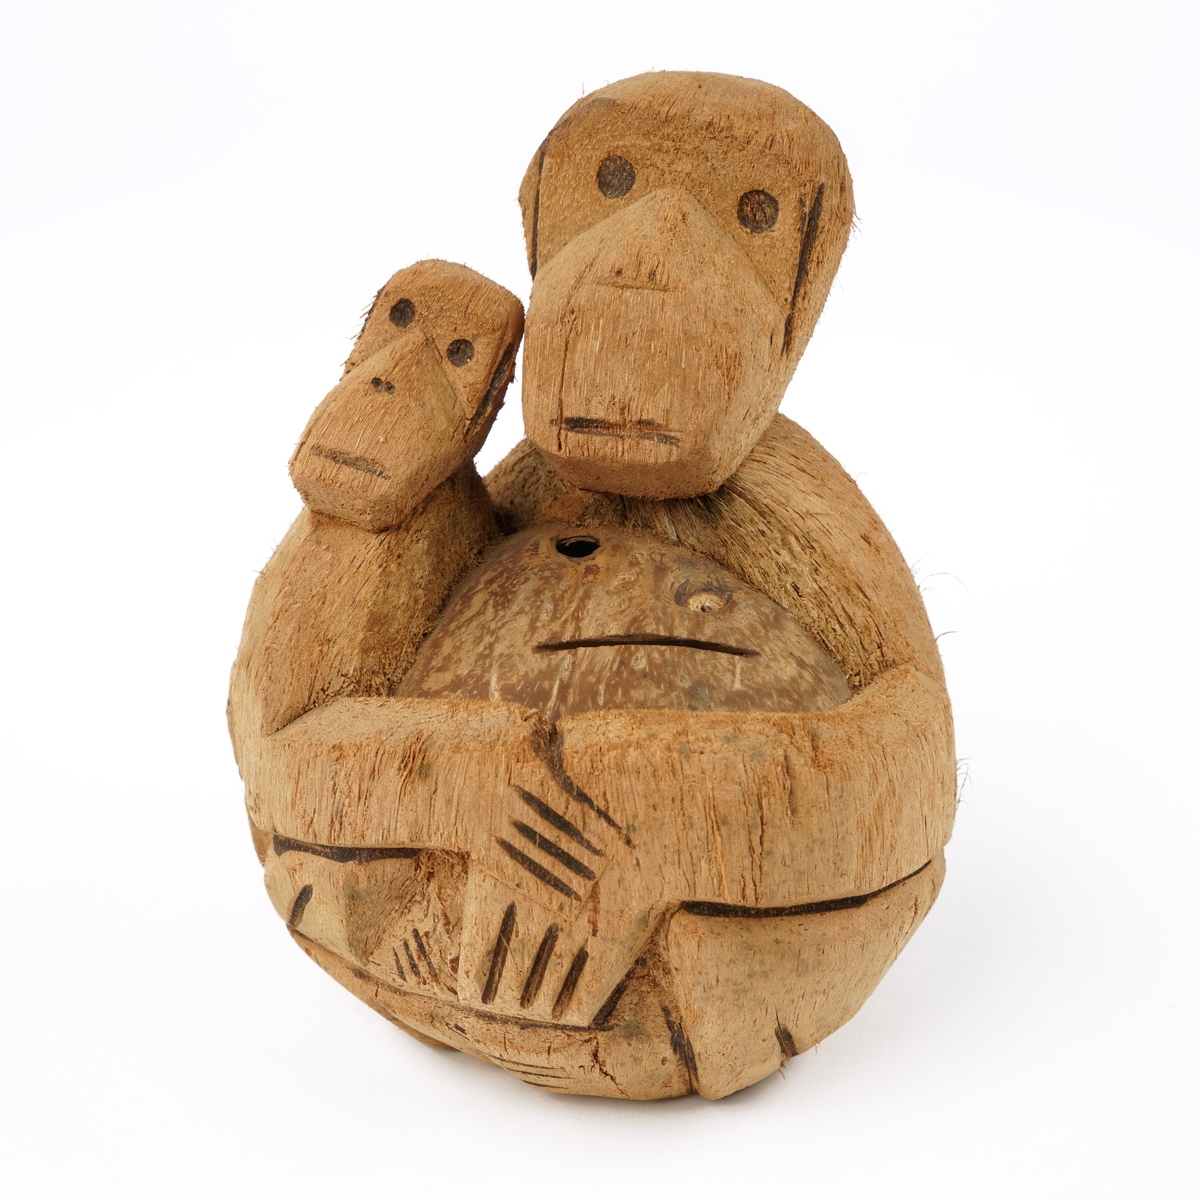 Skulptur av to formentlig aper,utskåret av en kokosnøtt.Skulpturen er hul